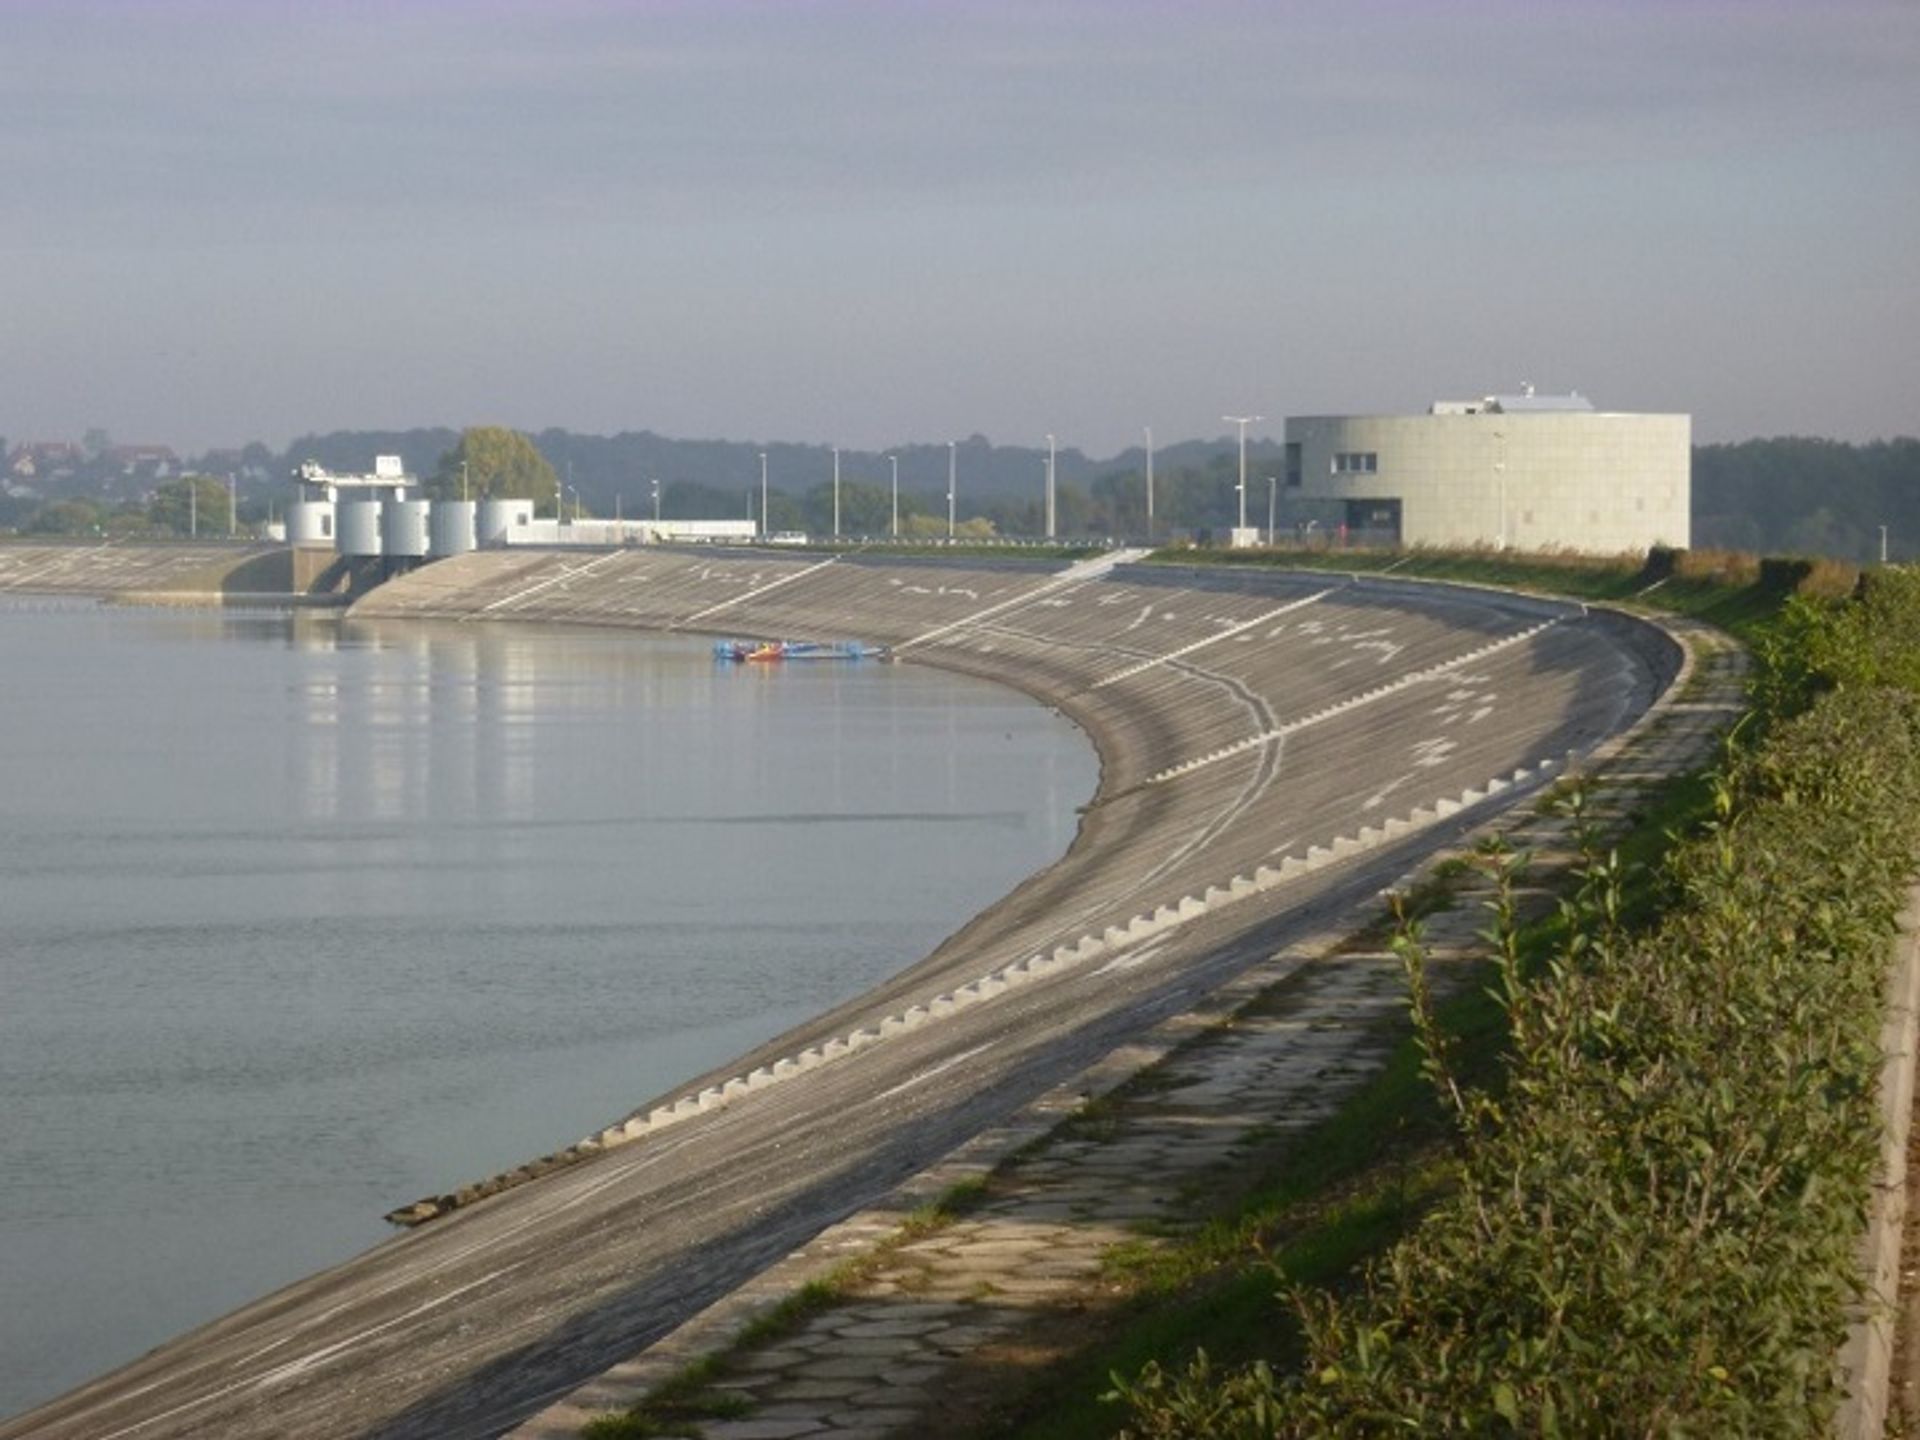  Modernizacja zbiornika wodnego w Nysie zakończona